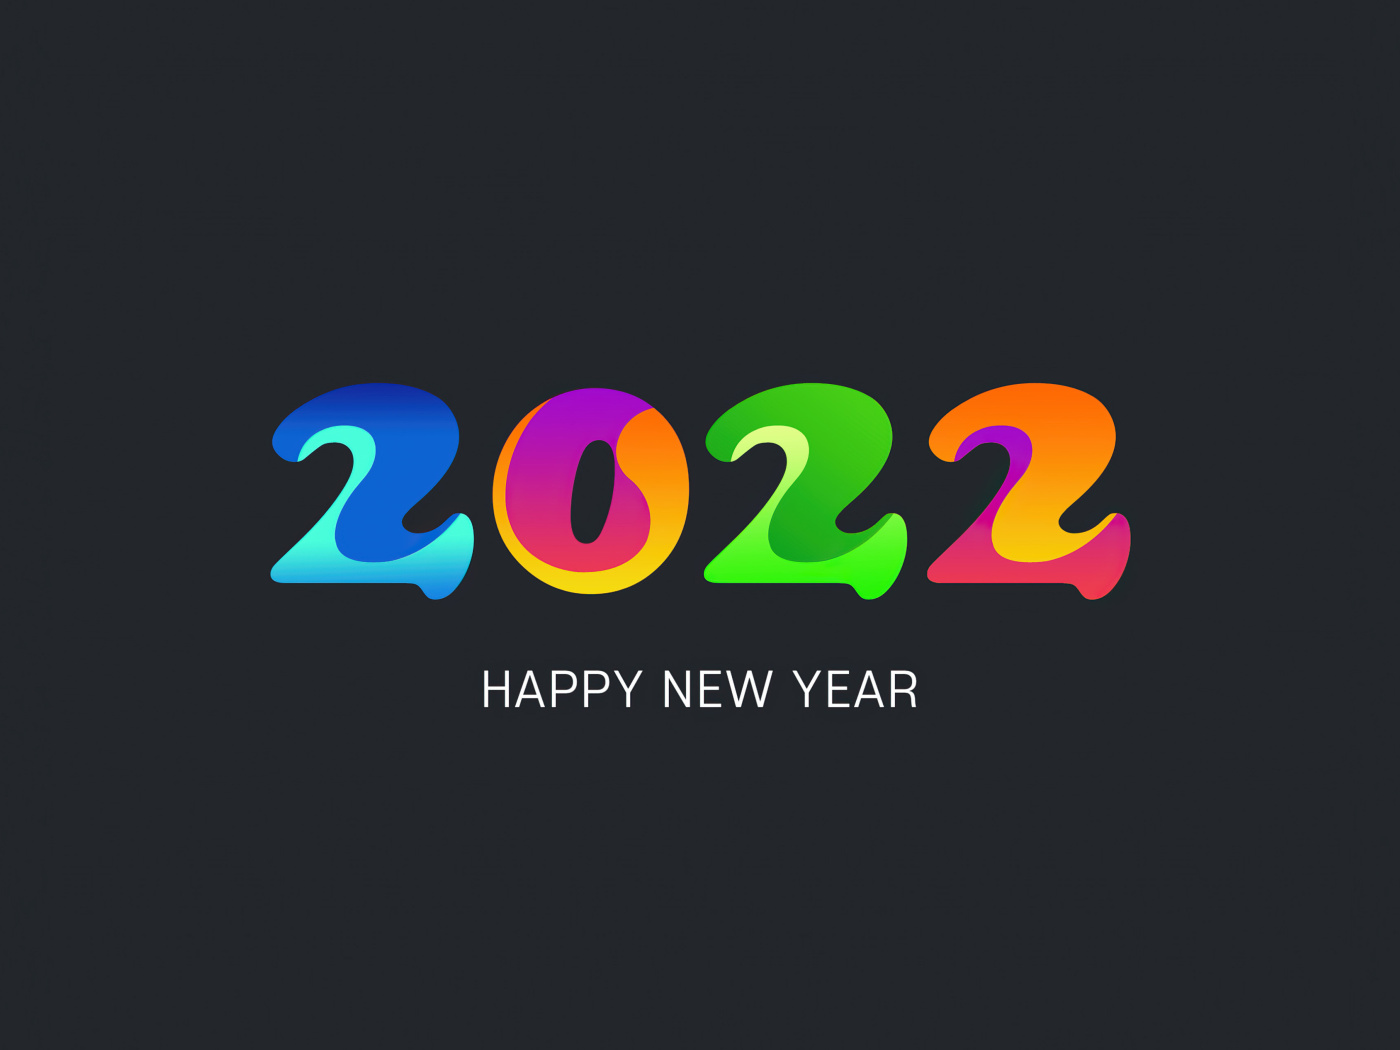 Обои Happy new year 2022 1400x1050